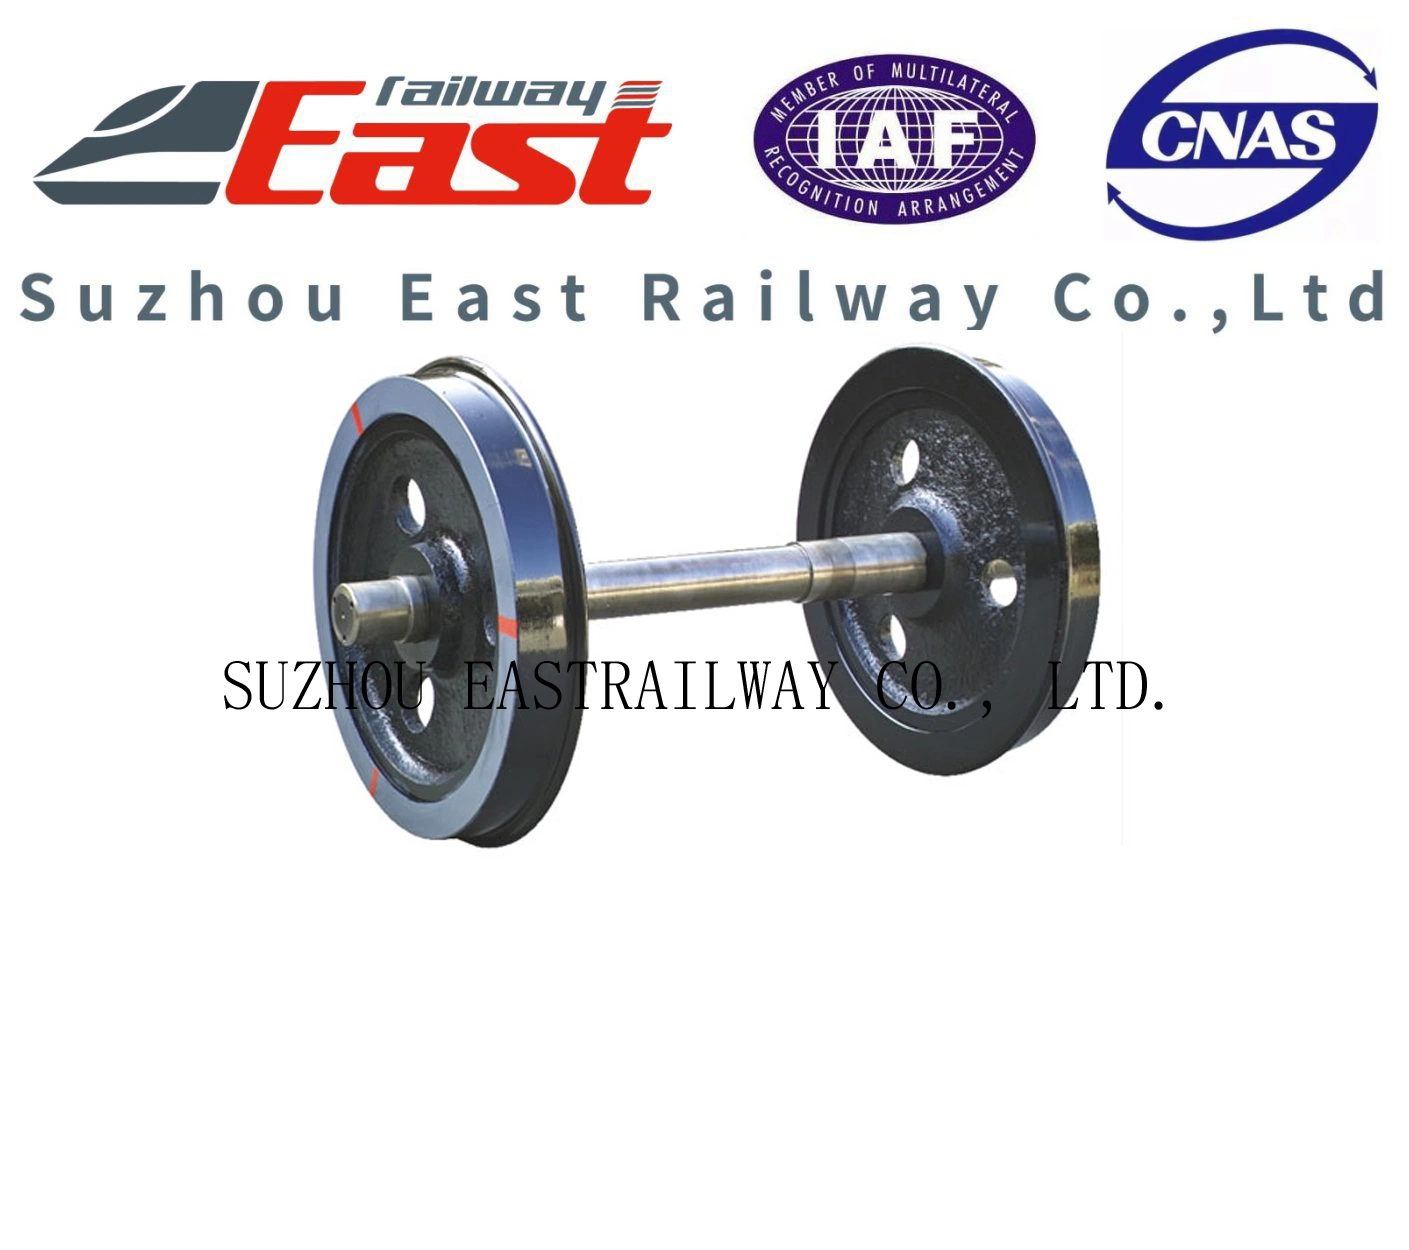 Wheel Set for Railway Freight Wagon Bogie